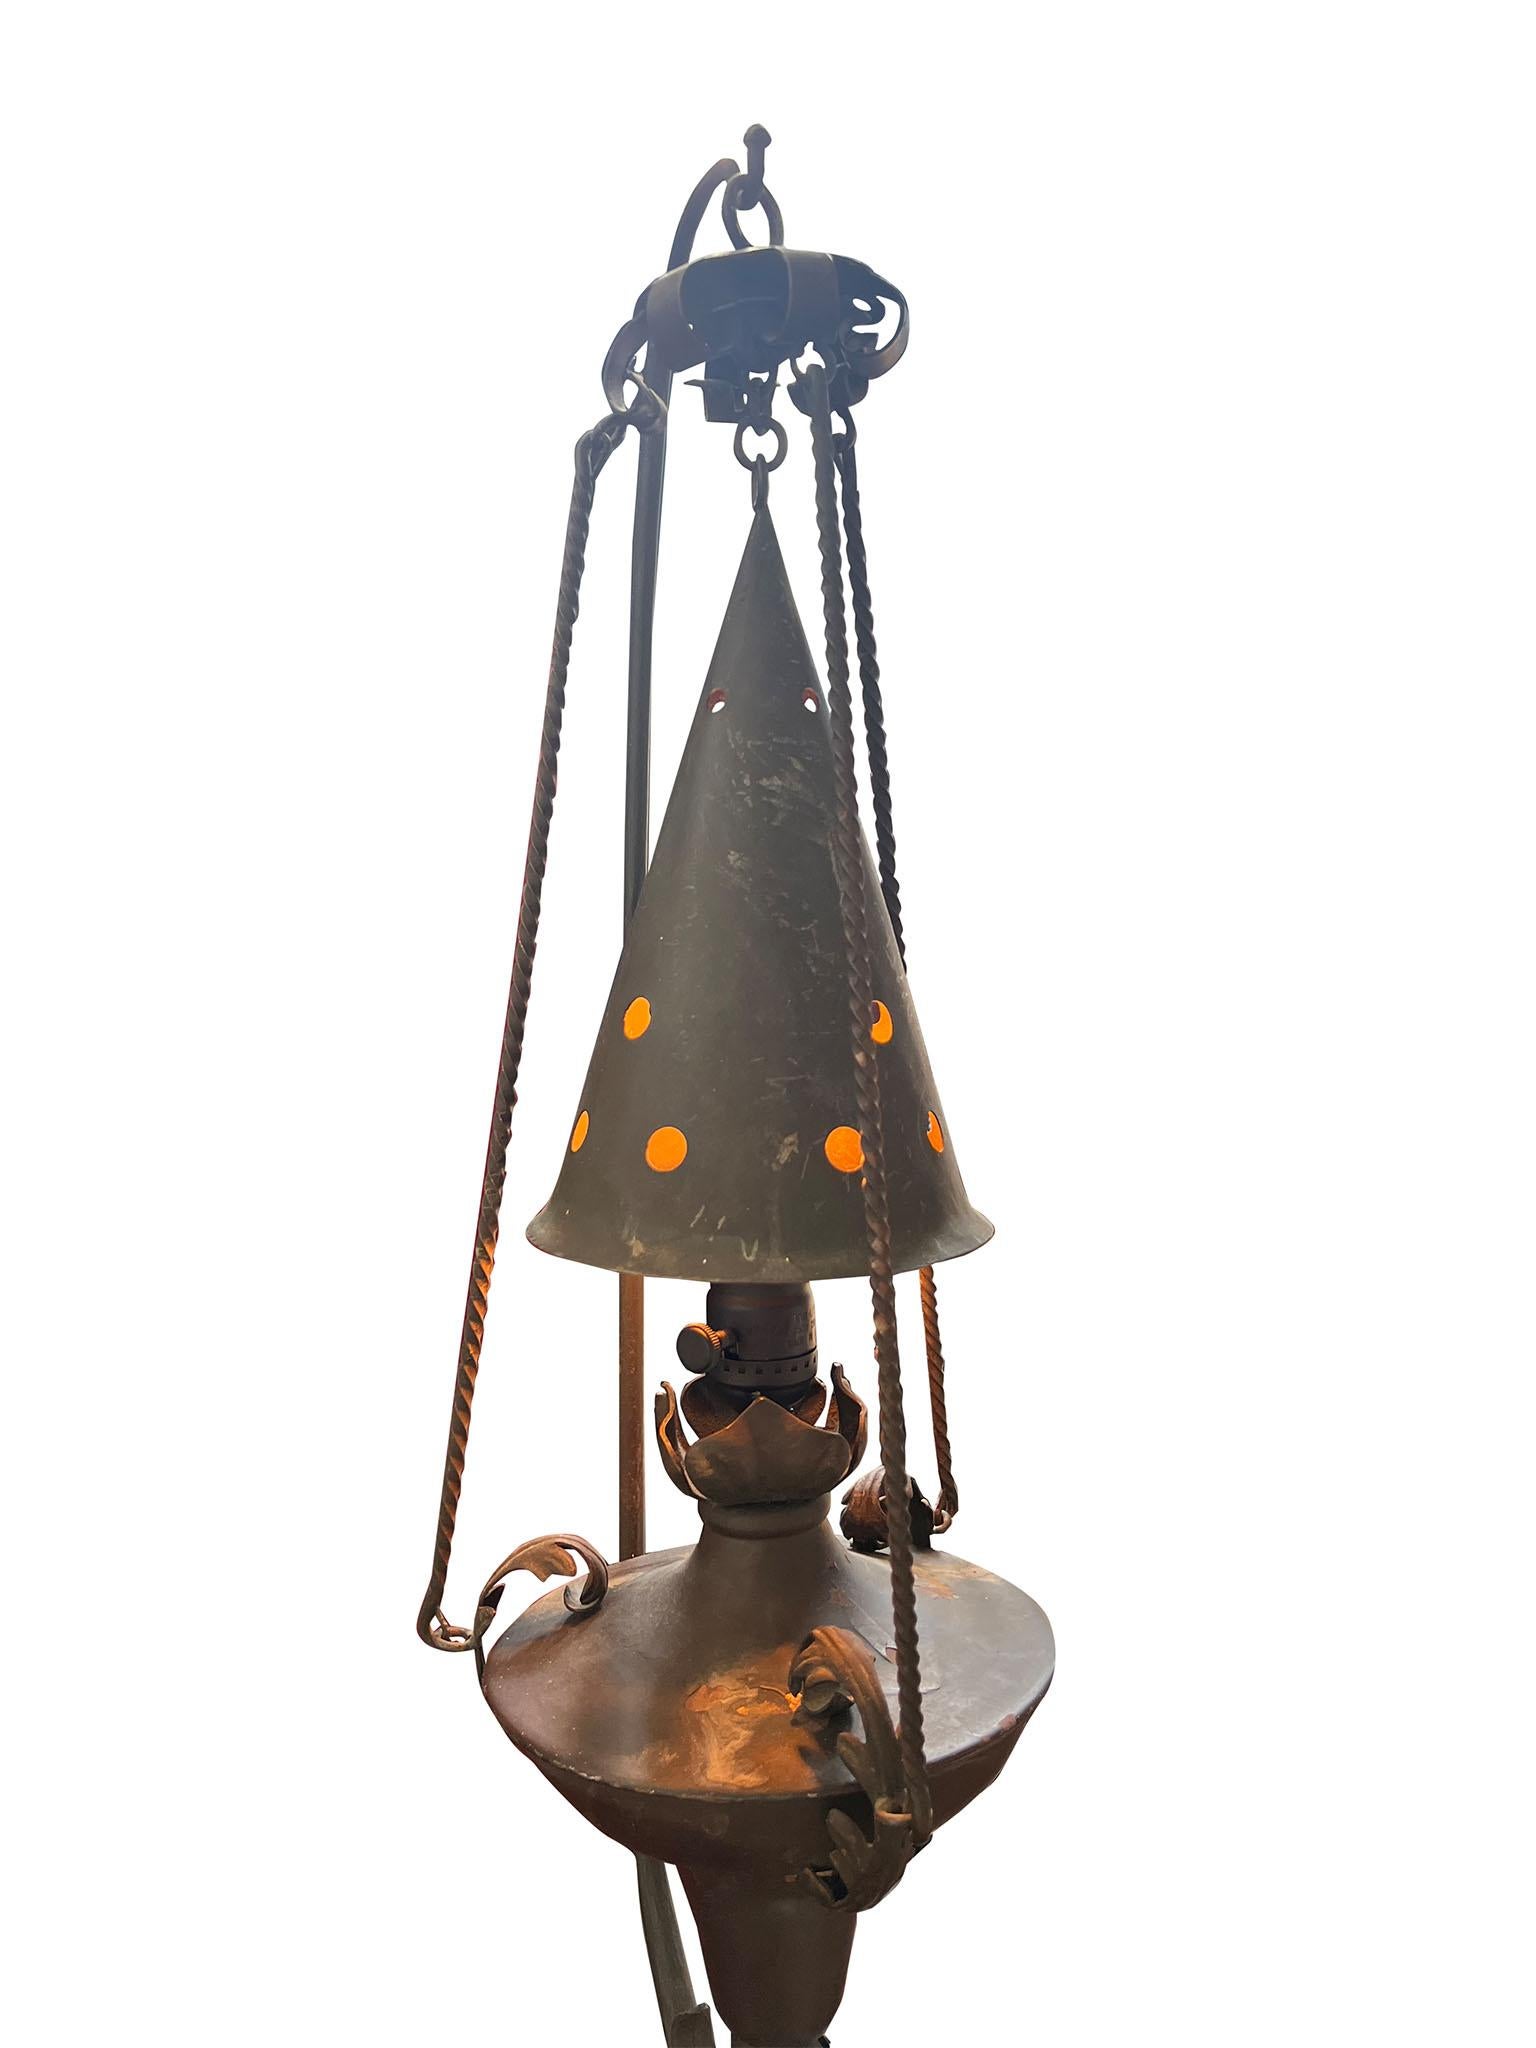 Skurriles Paar Stehlampen aus Schmiedeeisen, das dem Schmiedemeister Samuel Yellin zugeschrieben wird. Das Paar Stehlampen besteht aus zwei Teilen: einer hängenden Laterne mit funktionaler Verkabelung und Masten, die wie gewundene Ranken aussehen.